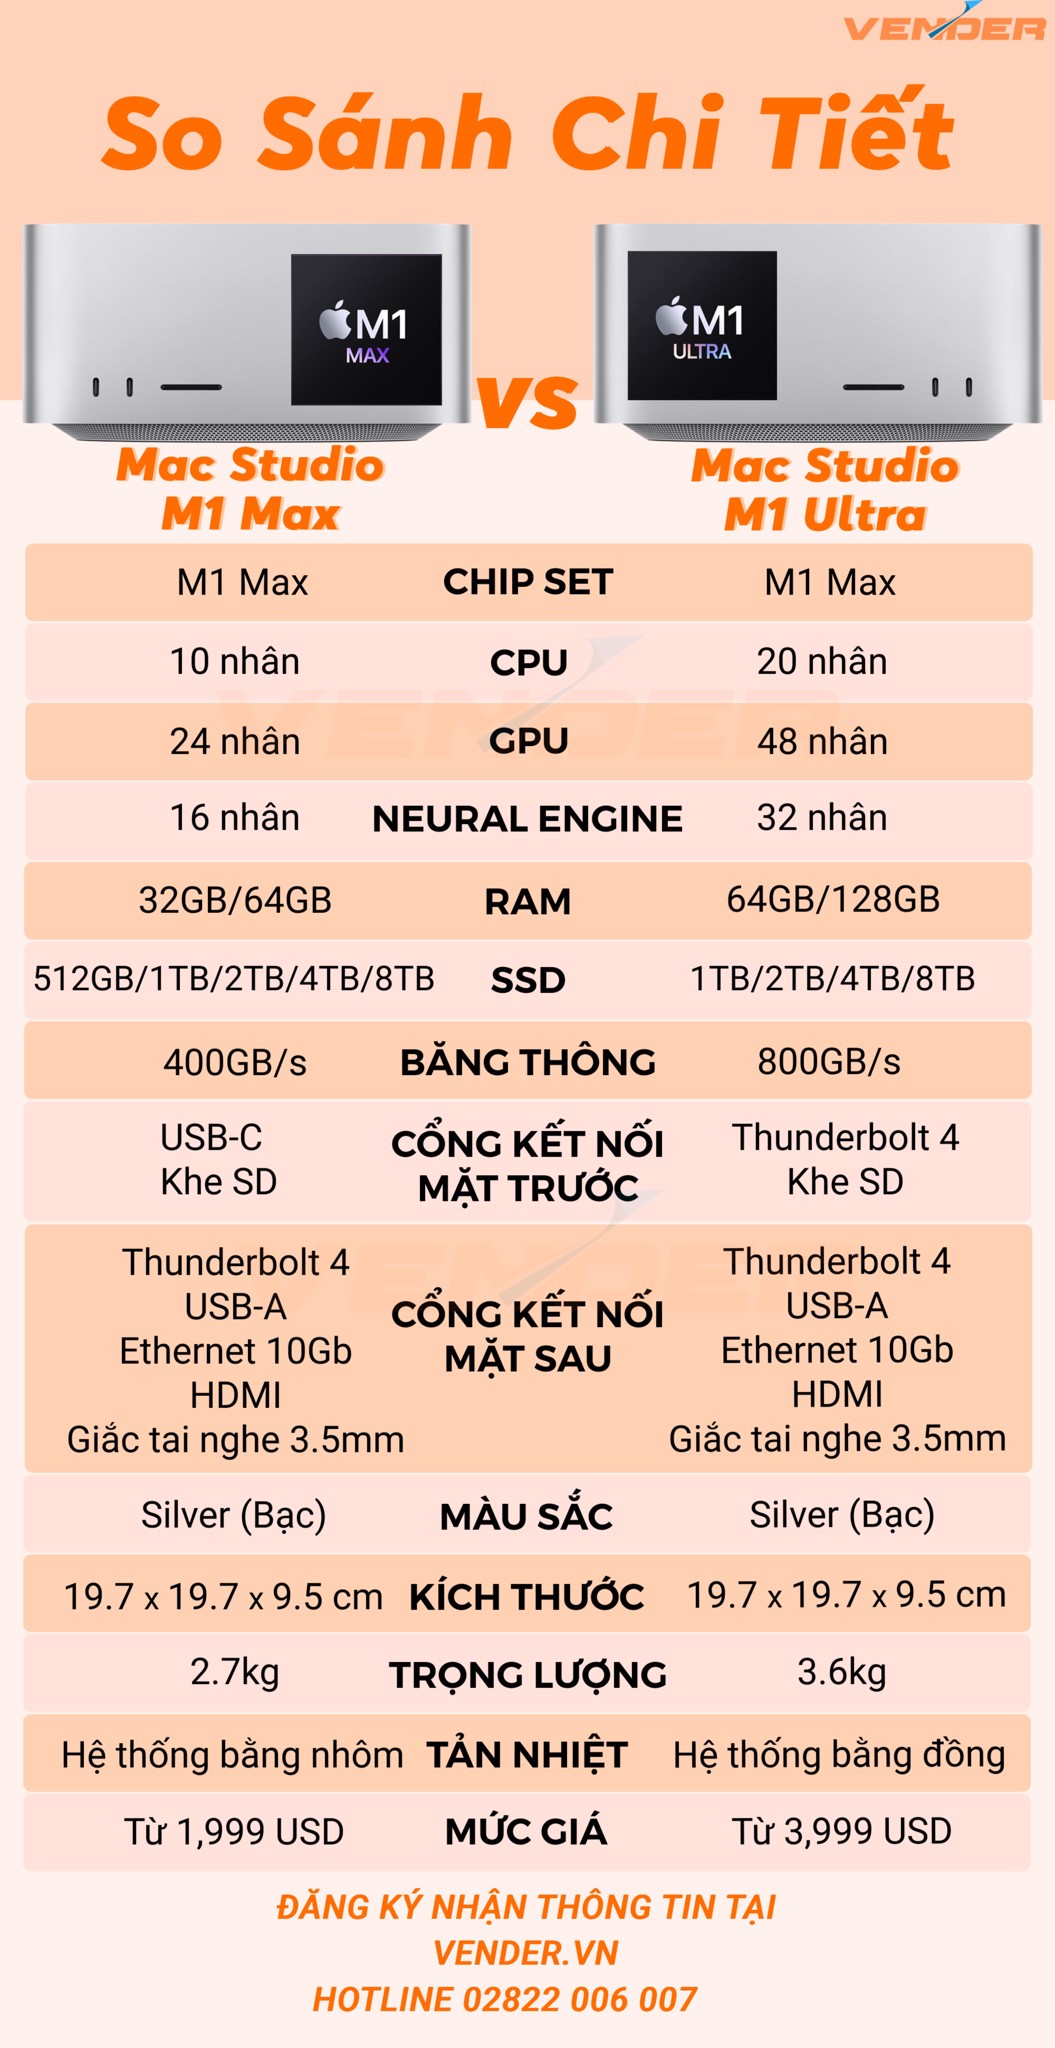 So sánh Mac Studio M1 Ultra vs M1 Max: Chênh lệch 2000$ để nâng cấp?